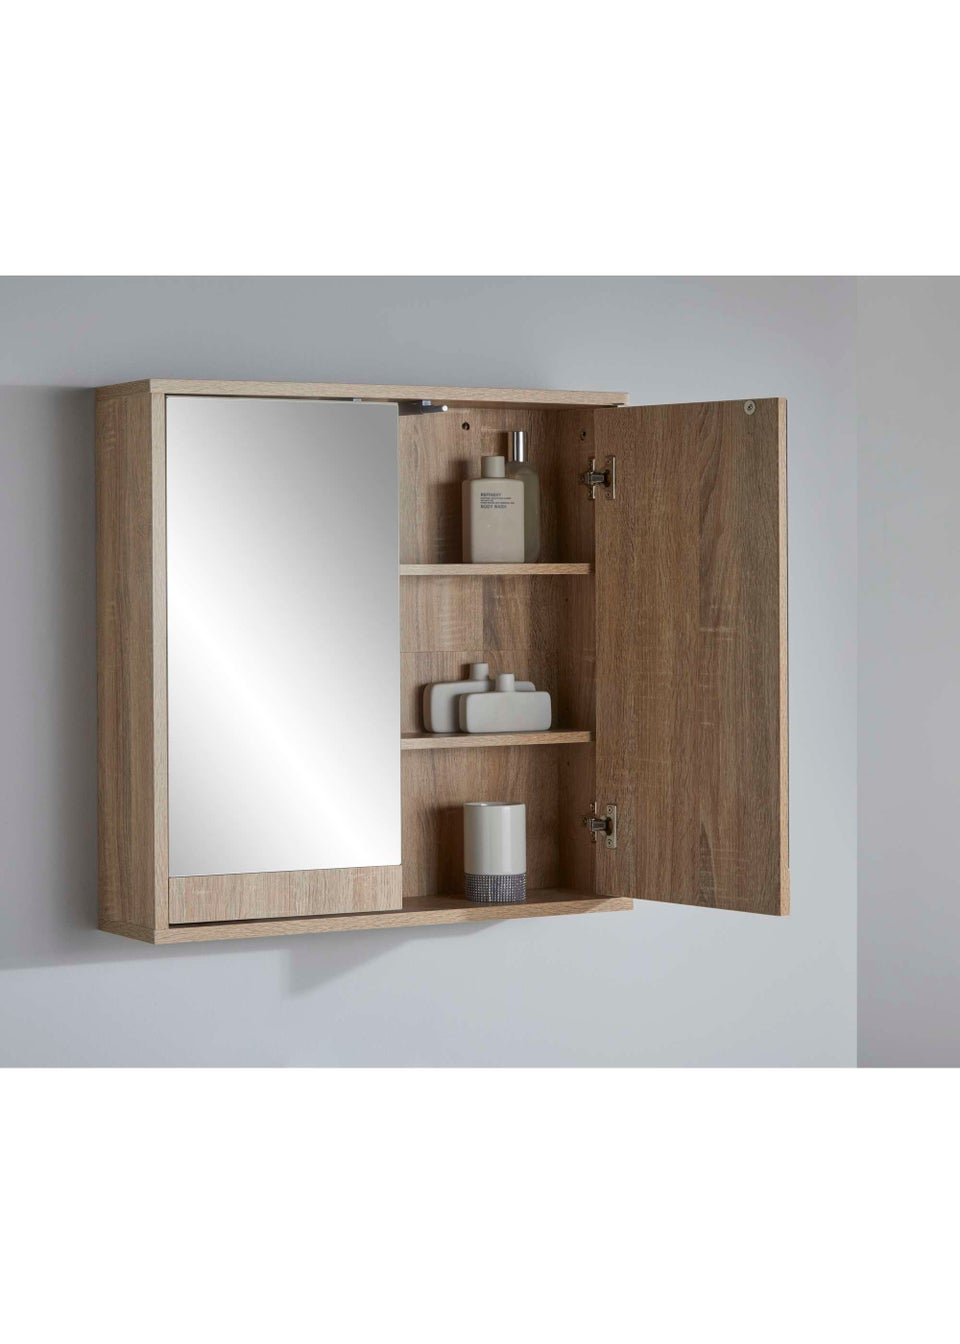 Lloyd Pascal Castleton Oak Effect Double Mirror Cabinet Natural (60cm x 60cm x 15cm)